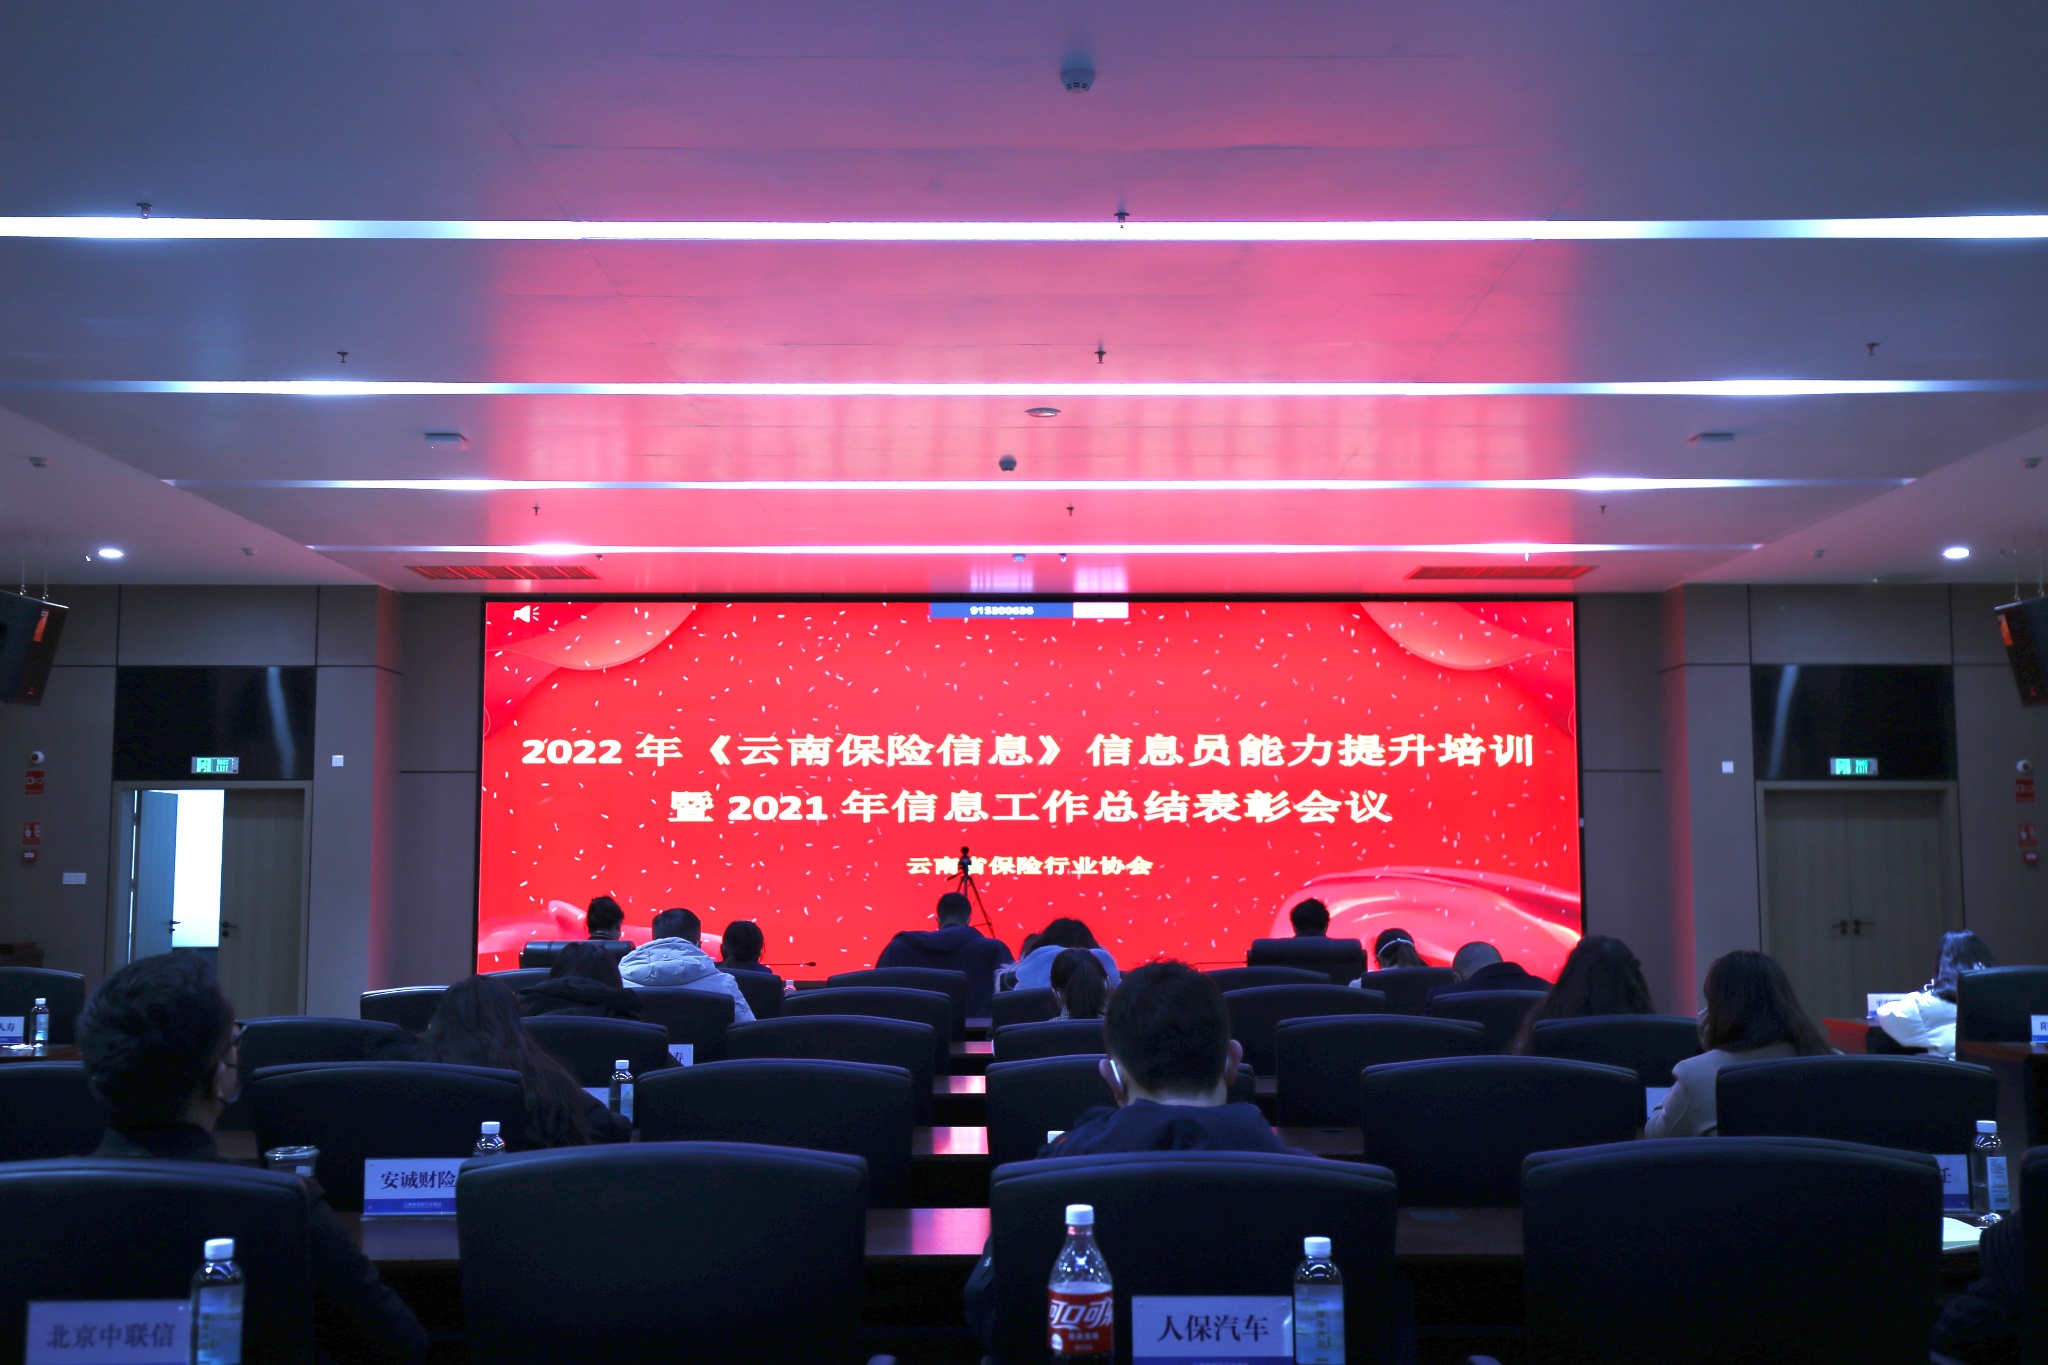 加强队伍建设  激发宣传活力    ——云南省保险行业协会组织召开2022年《云南保险信息》信息员技能提升培训暨2021年信息工作总结表彰会议